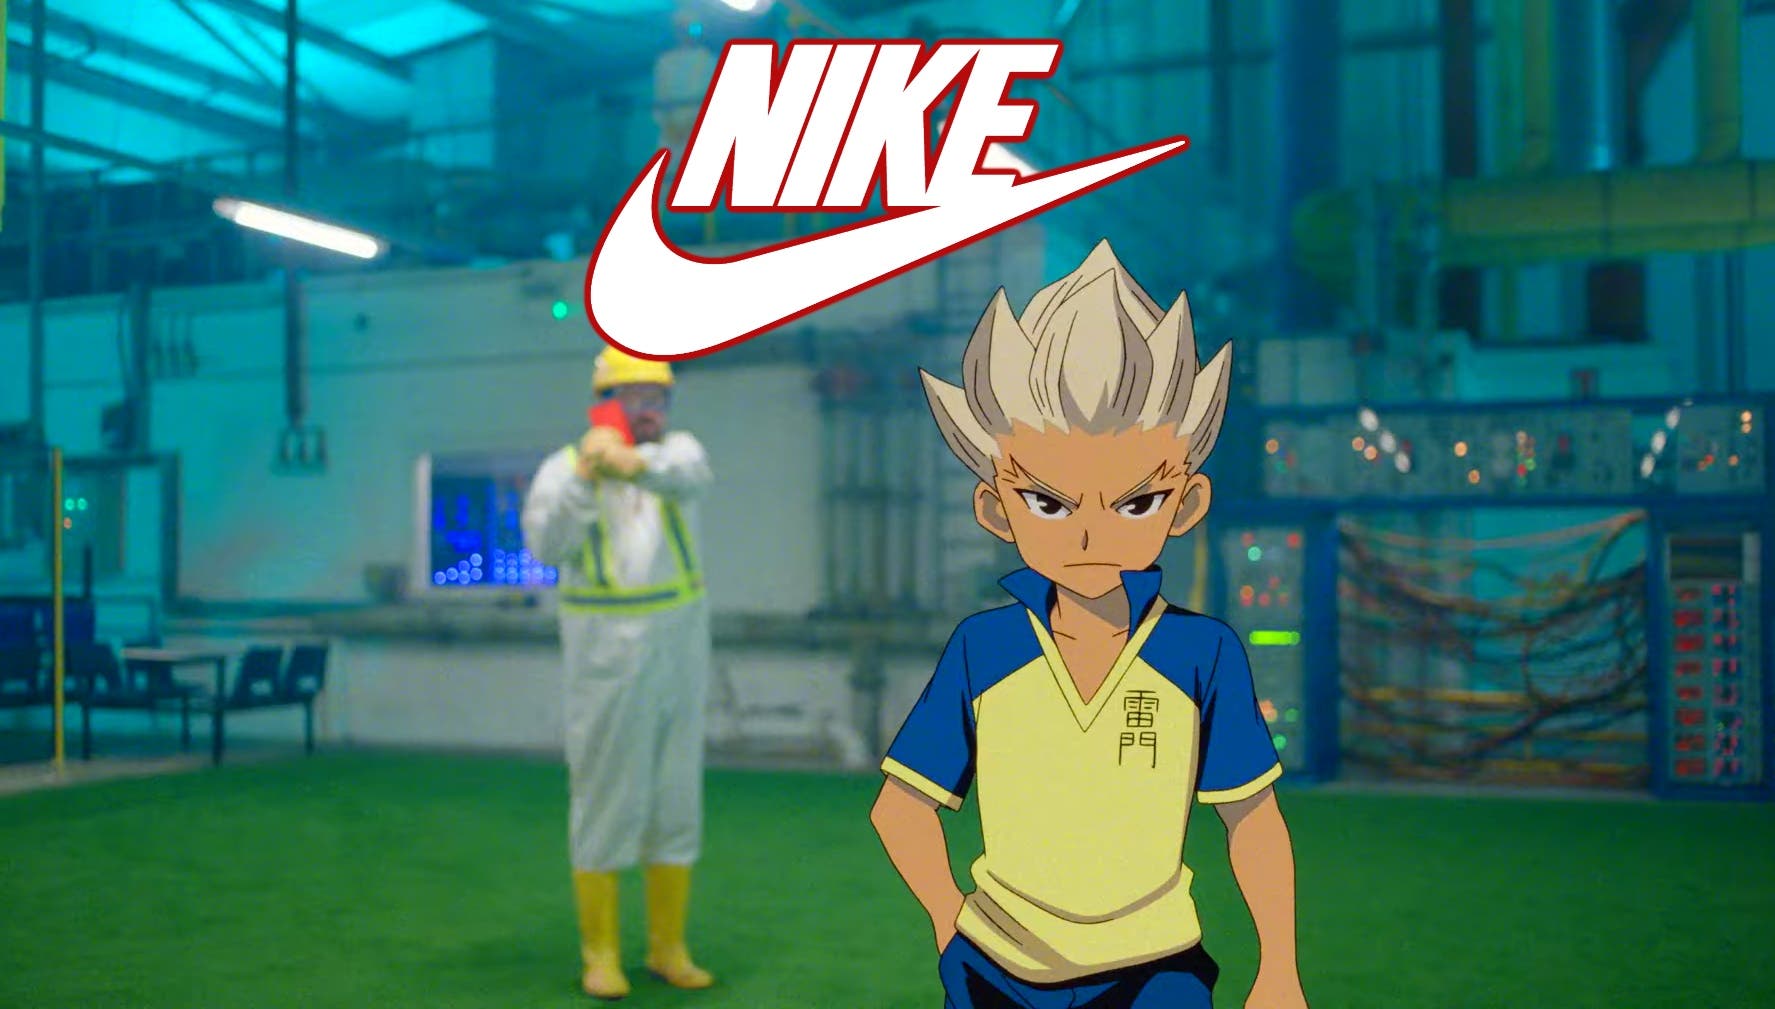 Inazuma Eleven se cuela en el nuevo anuncio de Nike cara al Mundial de Catar 2022